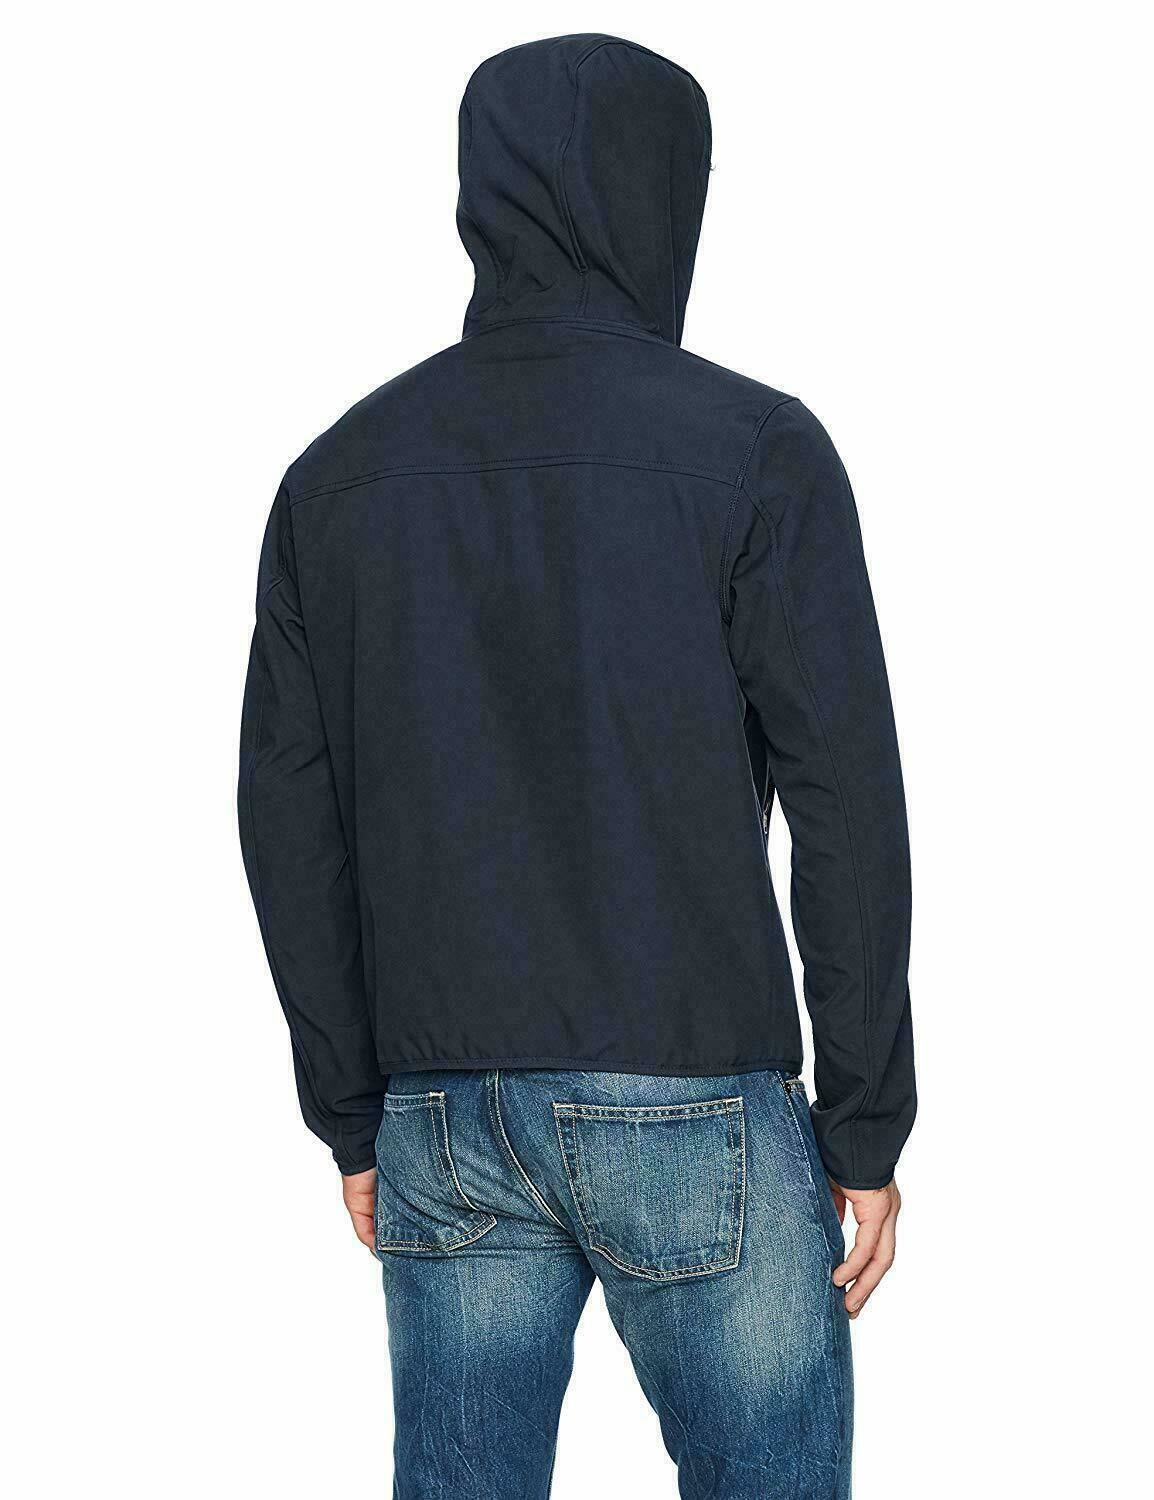 Tommy Hilfiger Mens Hooded Soft Shell Jacket Medium Full Zip Navy Blue